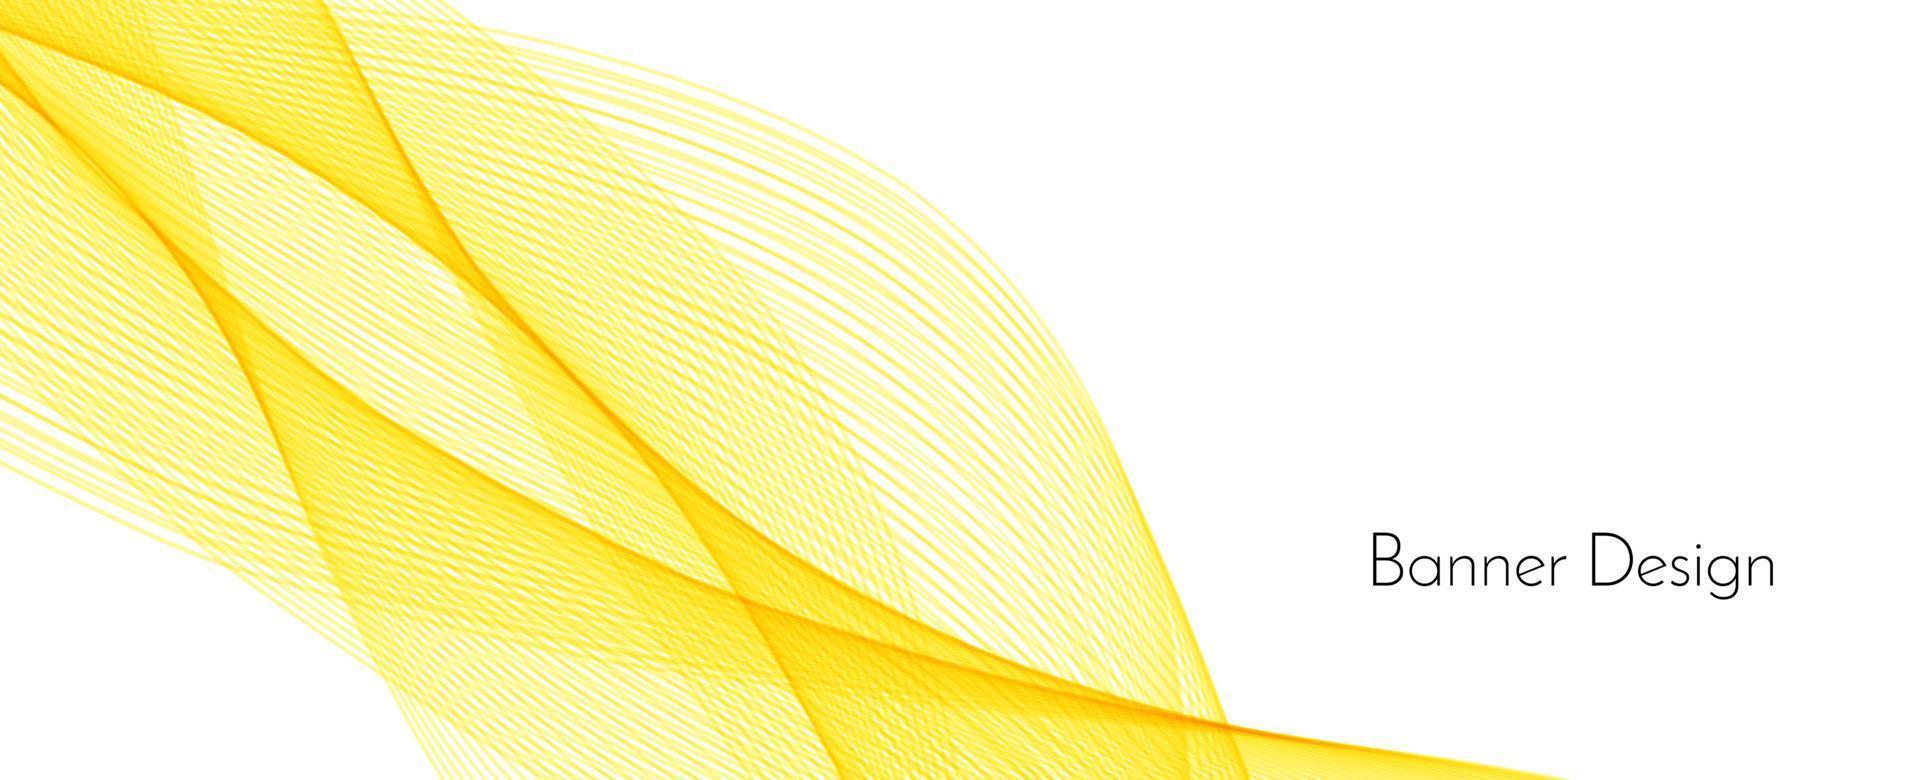 abstracte moderne dynamische stijlvolle rode en gele decoratieve patroon golf banner achtergrond vector